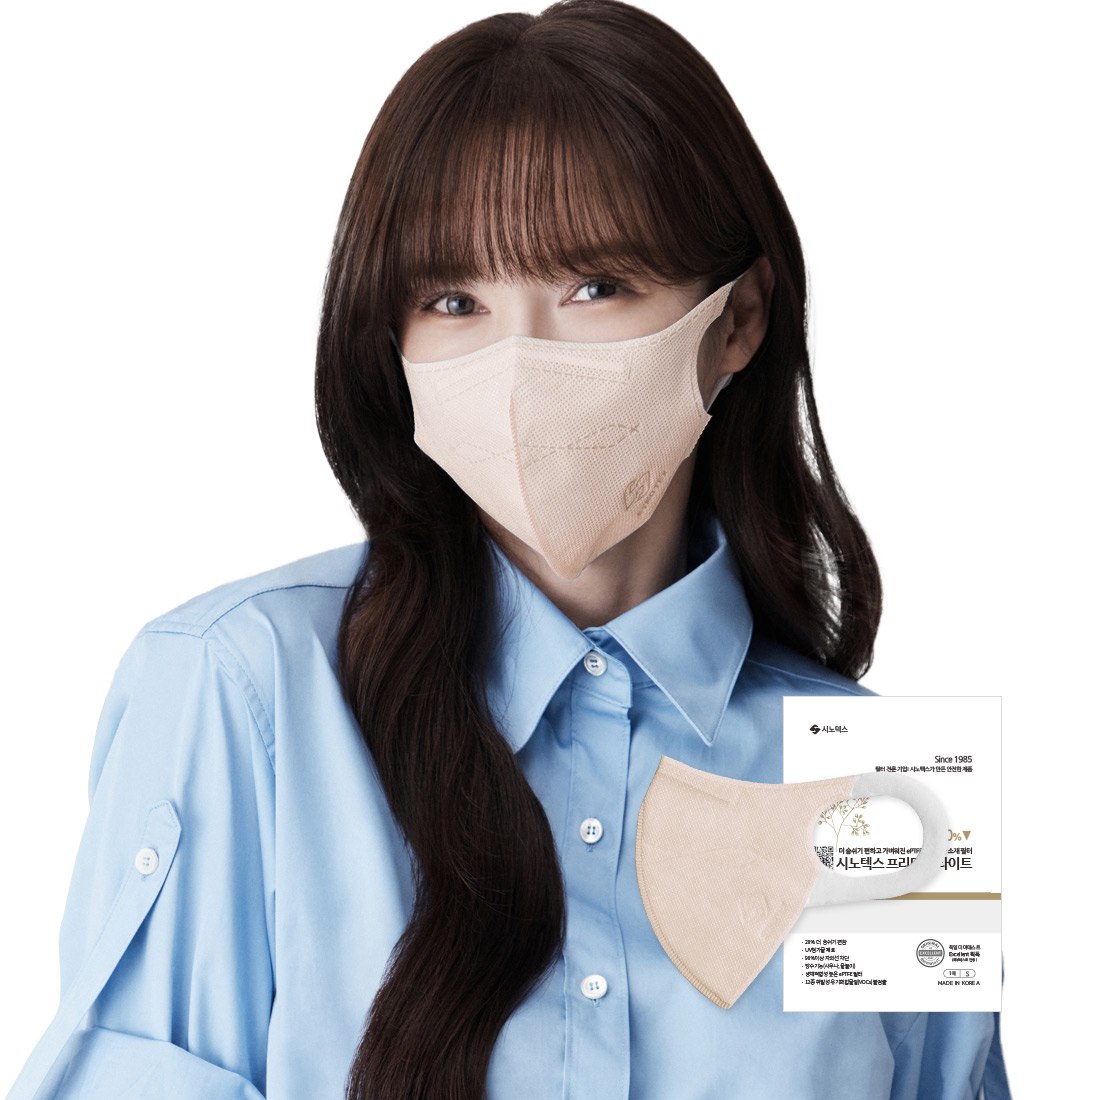 [New 피치핑크 한정판매] 프리미엄라이트 귀편한 숨쉬기편한 마스크 10매